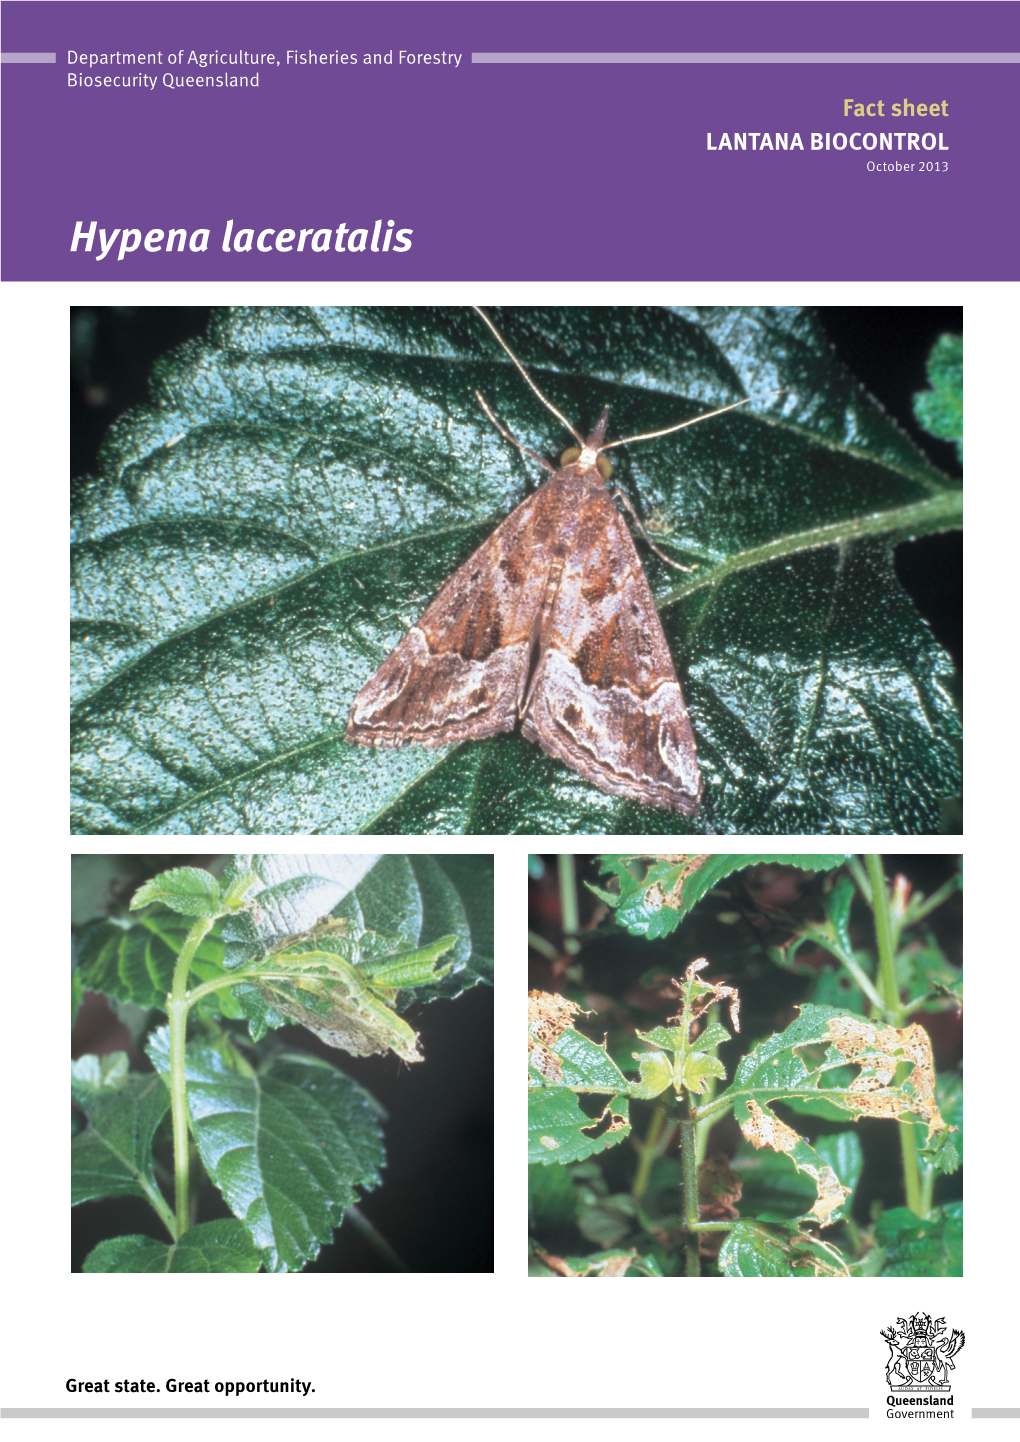 Hypena Laceratalis